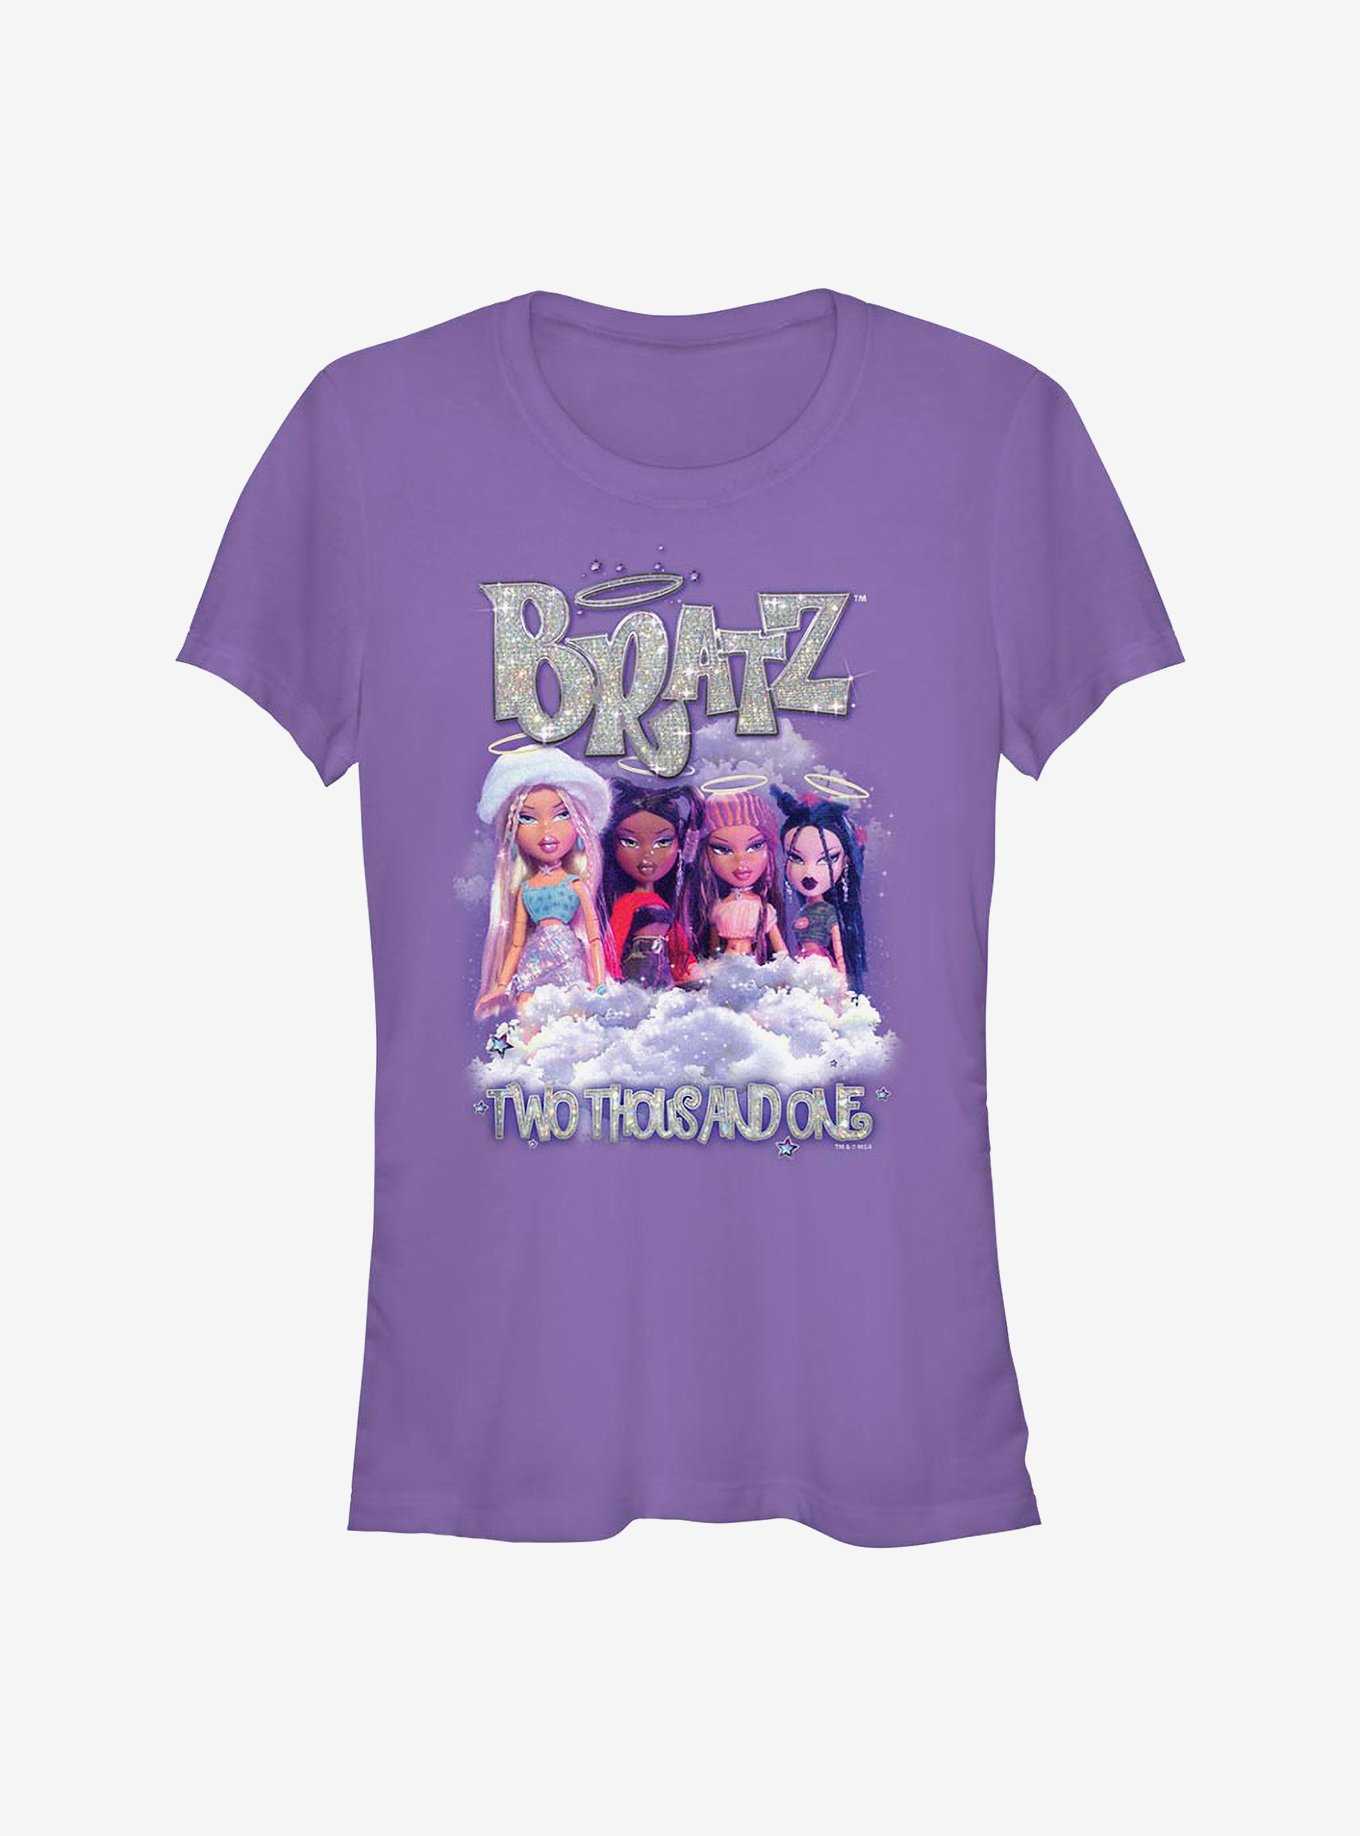 Bratz All Girls One Color Premium Camiseta